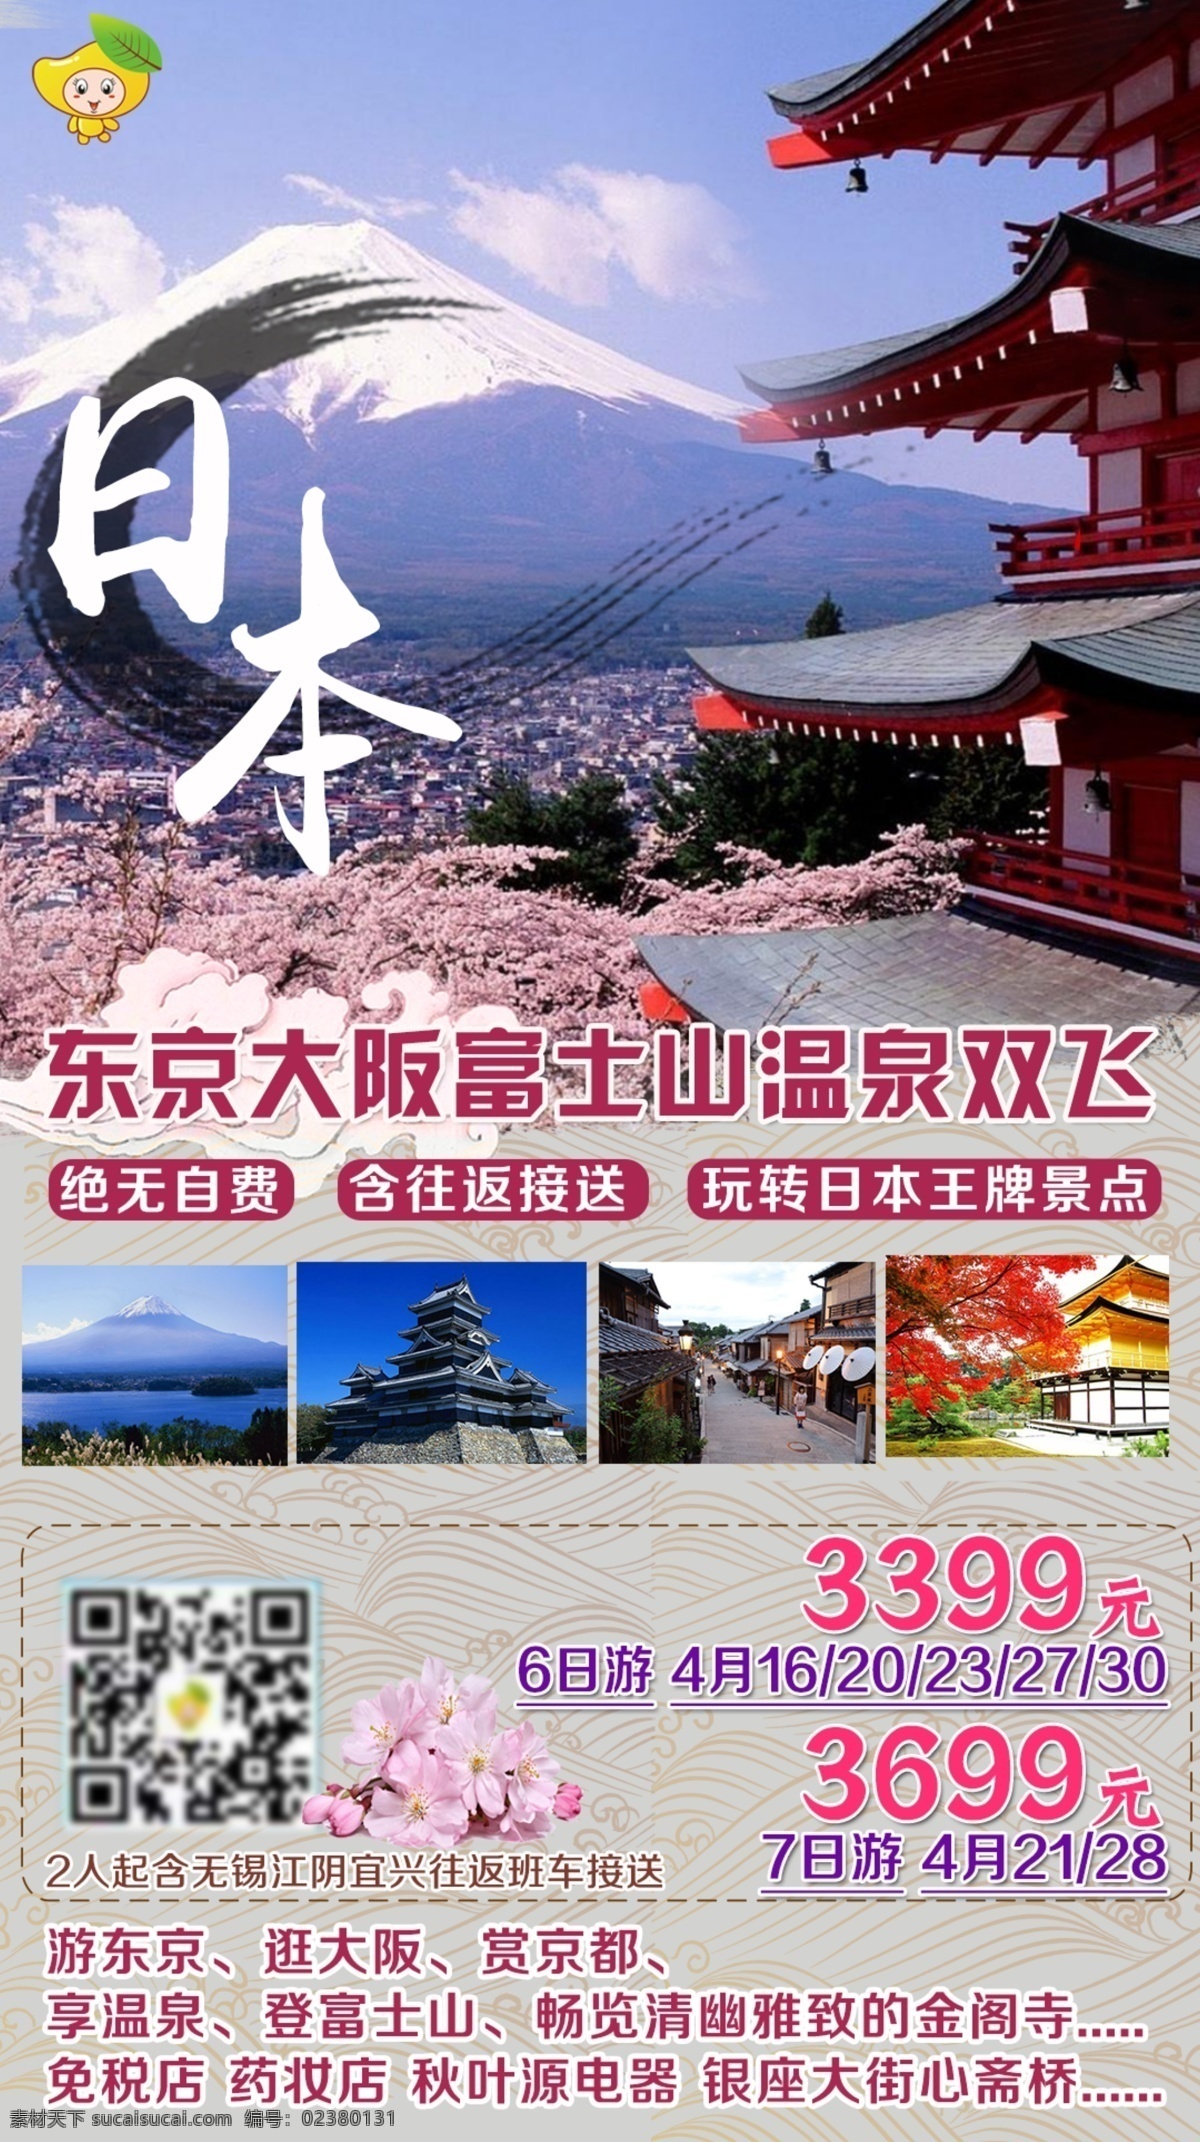 日本旅游 东京 富士山 温泉旅游 大阪 日式 特色游 古色古香 名古屋 金阁寺